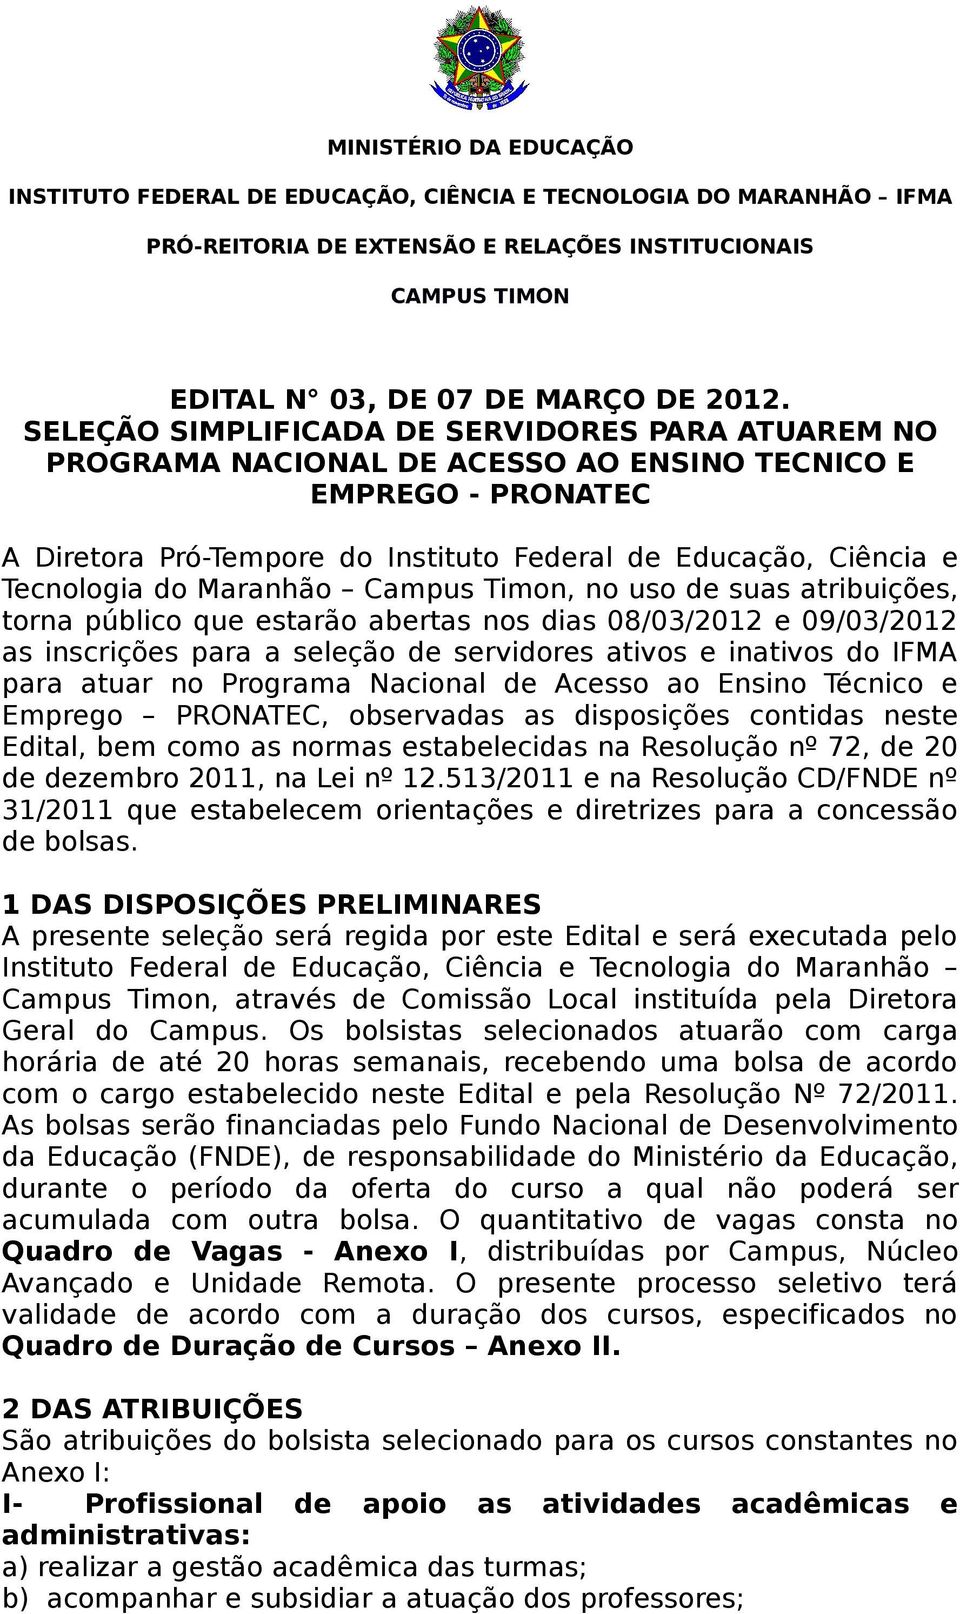 Maranhão Campus Timon, no uso de suas atribuições, torna público que estarão abertas nos dias 08/03/2012 e 09/03/2012 as inscrições para a seleção de servidores ativos e inativos do IFMA para atuar